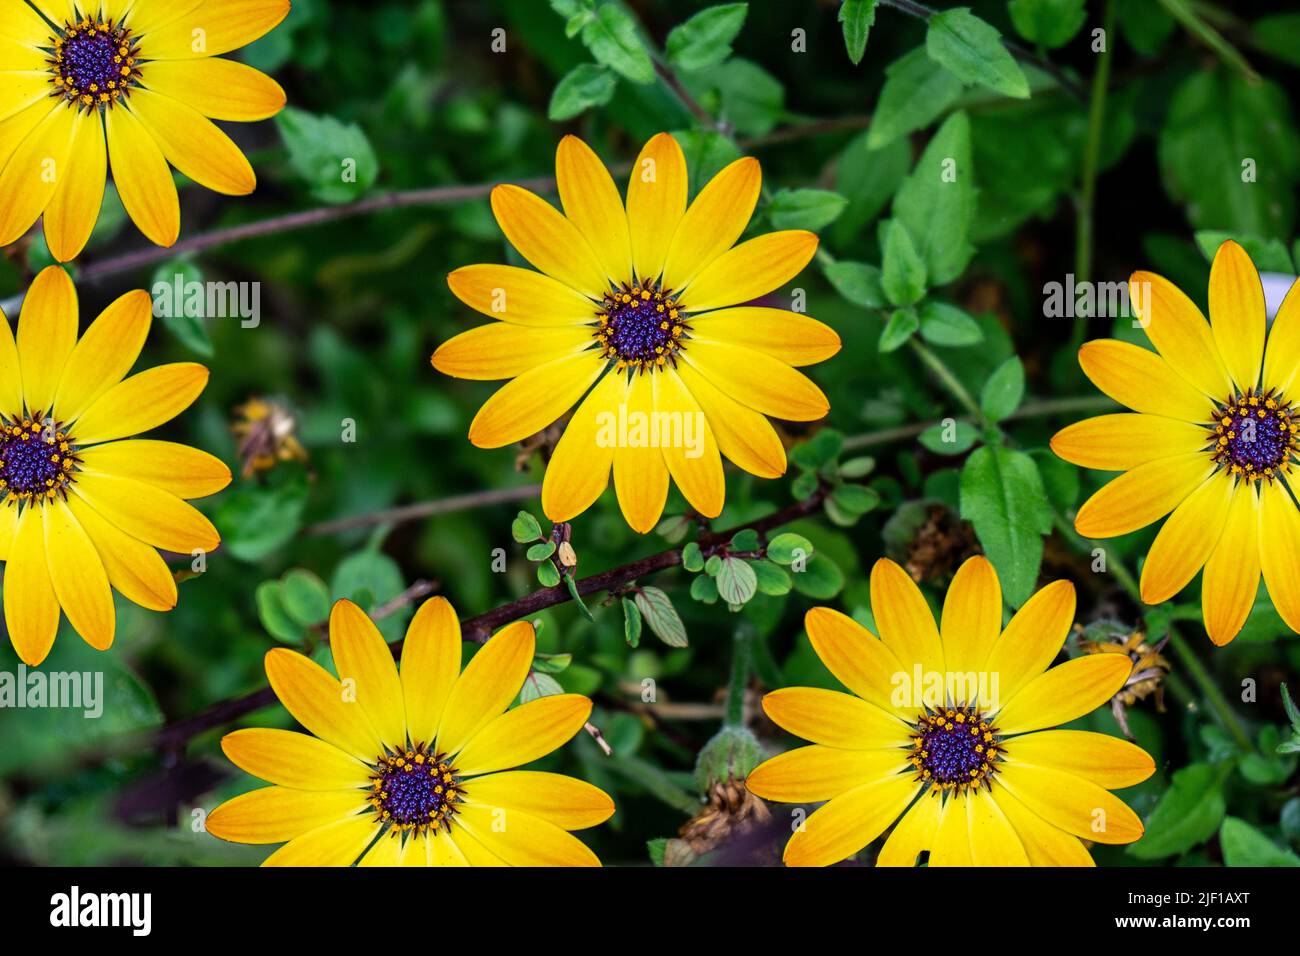 Las cabezas de flores de Osteospermum Erato, Osteospermum Cabo Daisy, Serenity Blue Eyed Beauty, pétalos amarillos con azul / púrpura centro “ojos”. Foto de stock